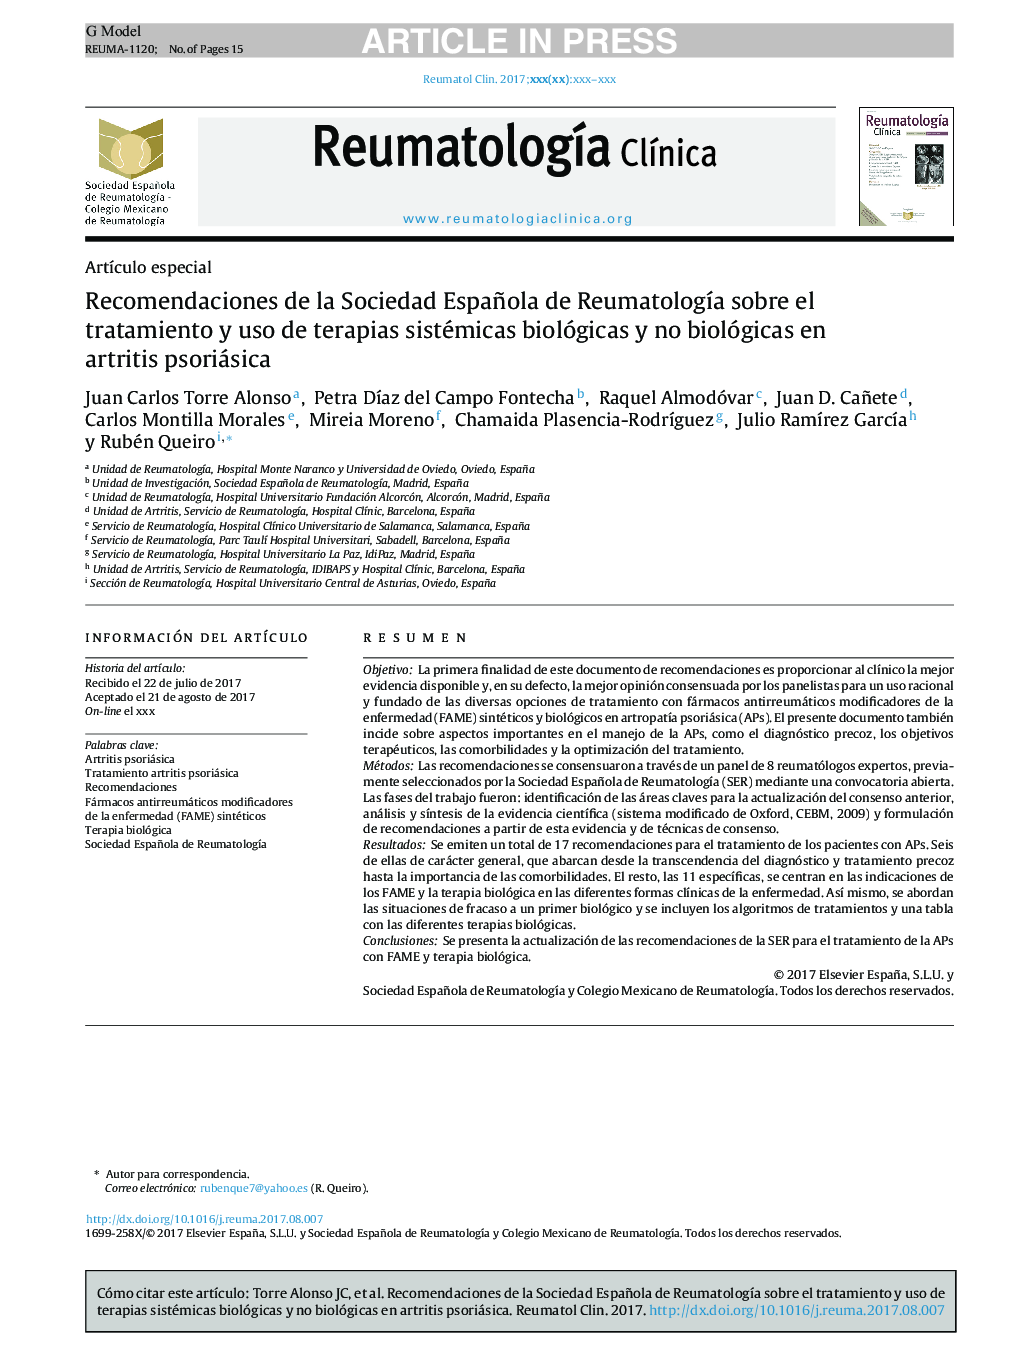 Recomendaciones de la Sociedad Española de ReumatologÃ­a sobre el tratamiento y uso de terapias sistémicas biológicas y no biológicas en artritis psoriásica